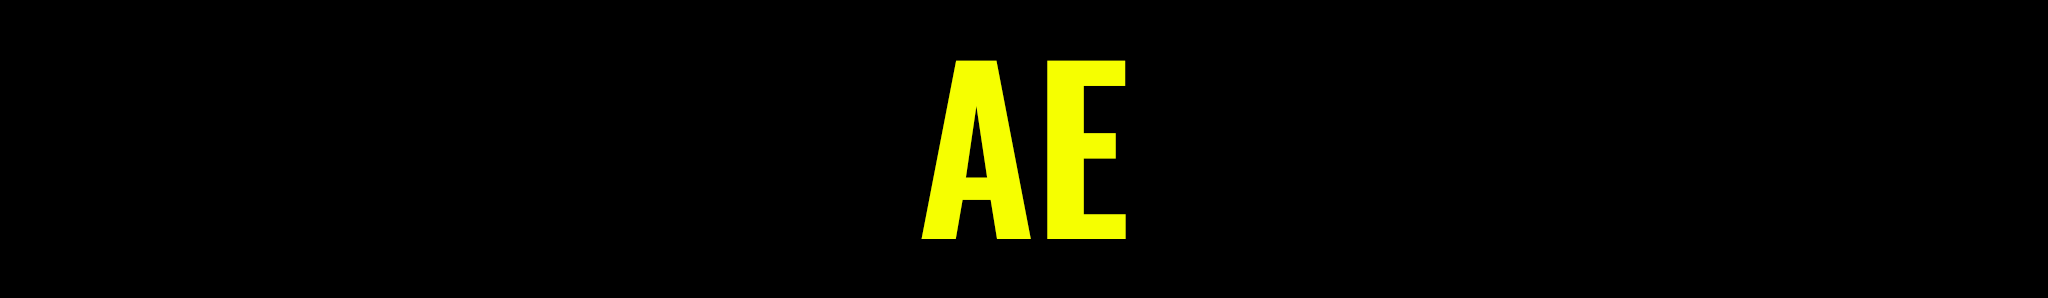 Alasdair Easton's profile banner